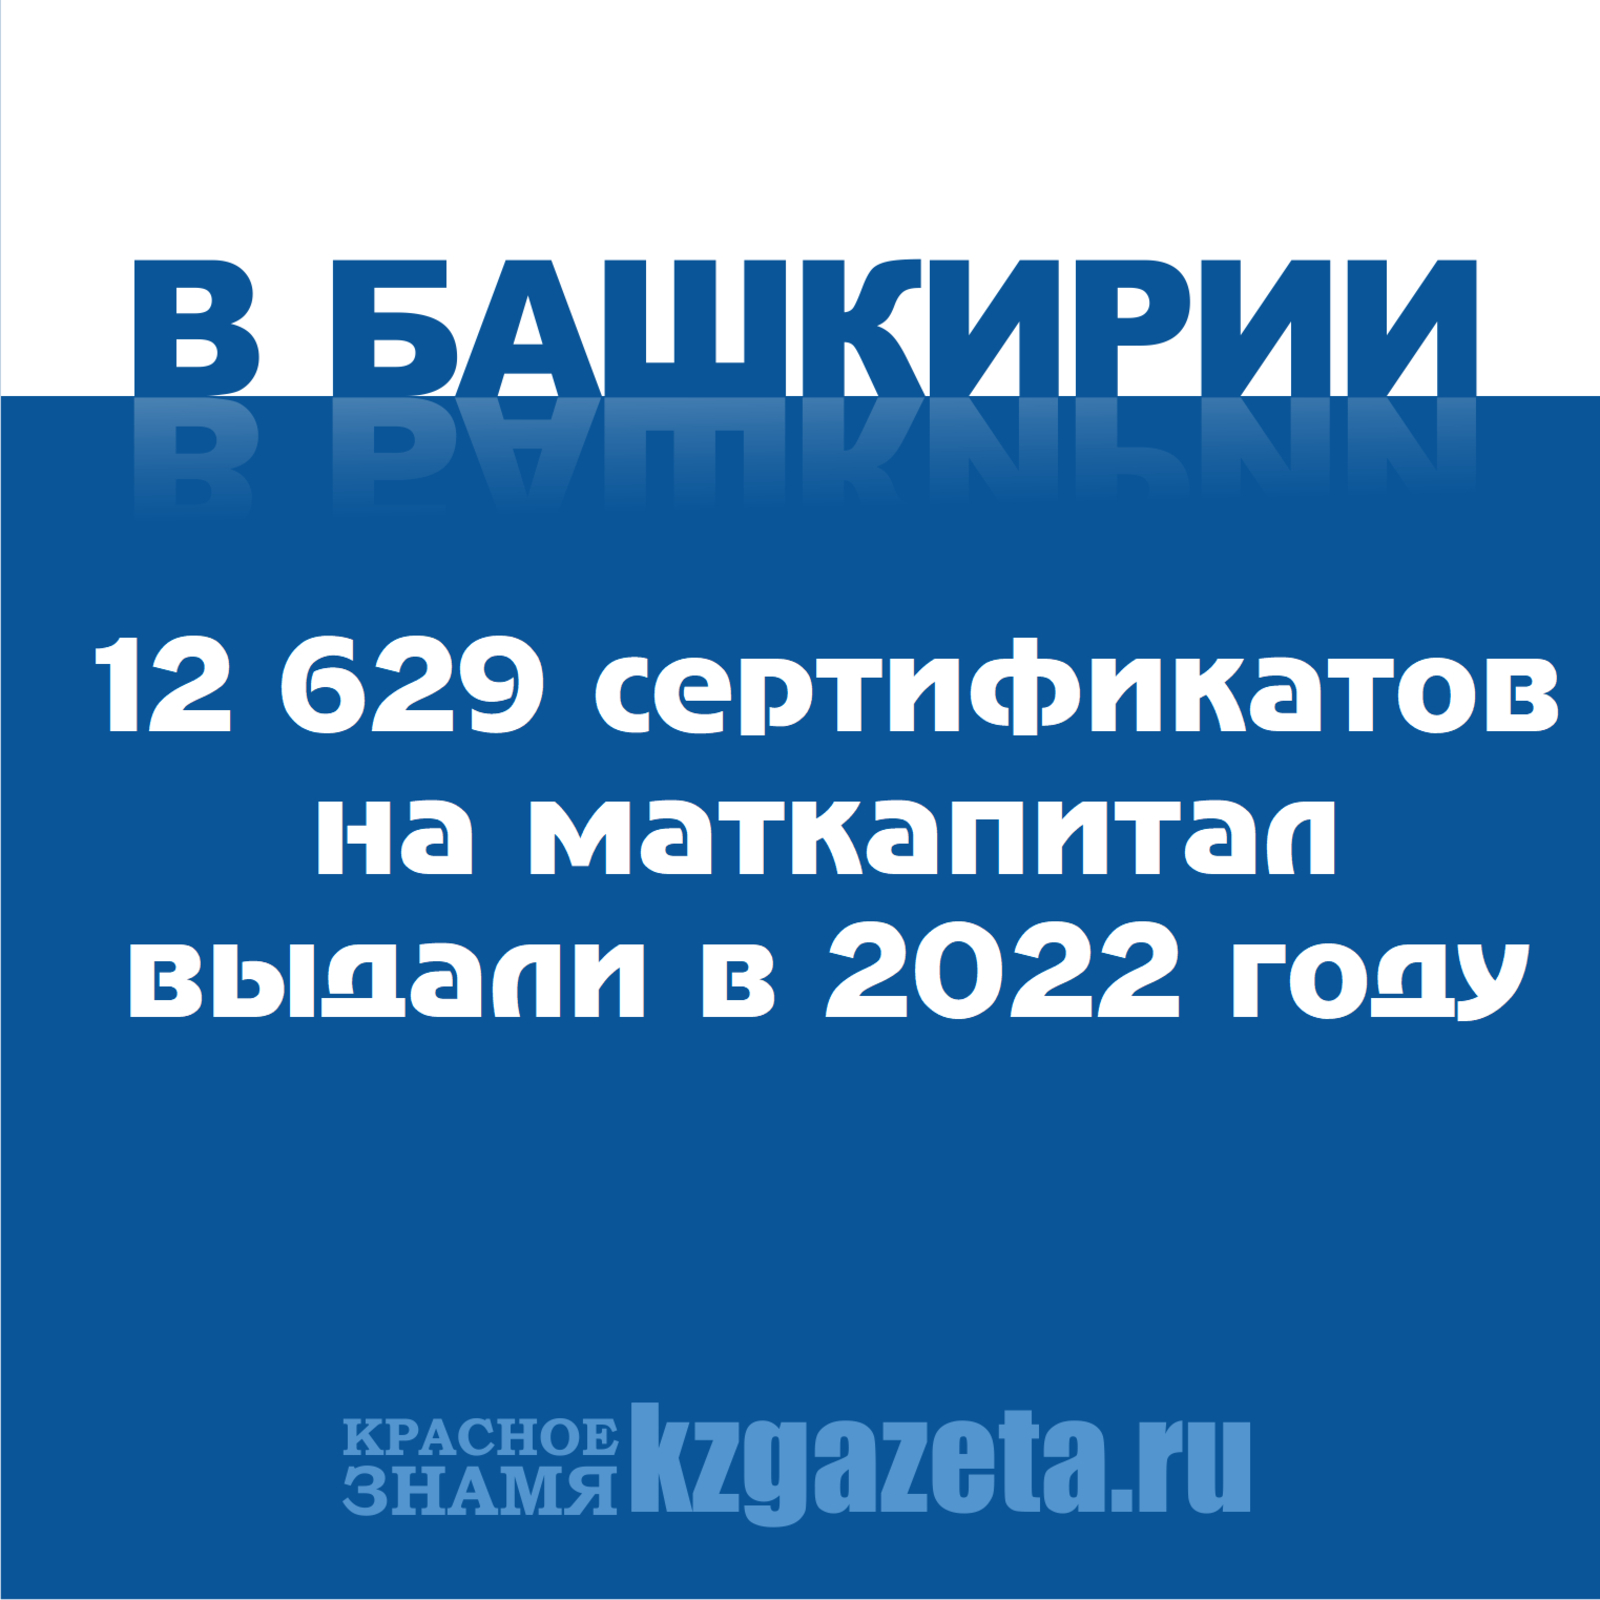 12 629 сертификатов на маткапитал выдали в 2022 году в Башкирии